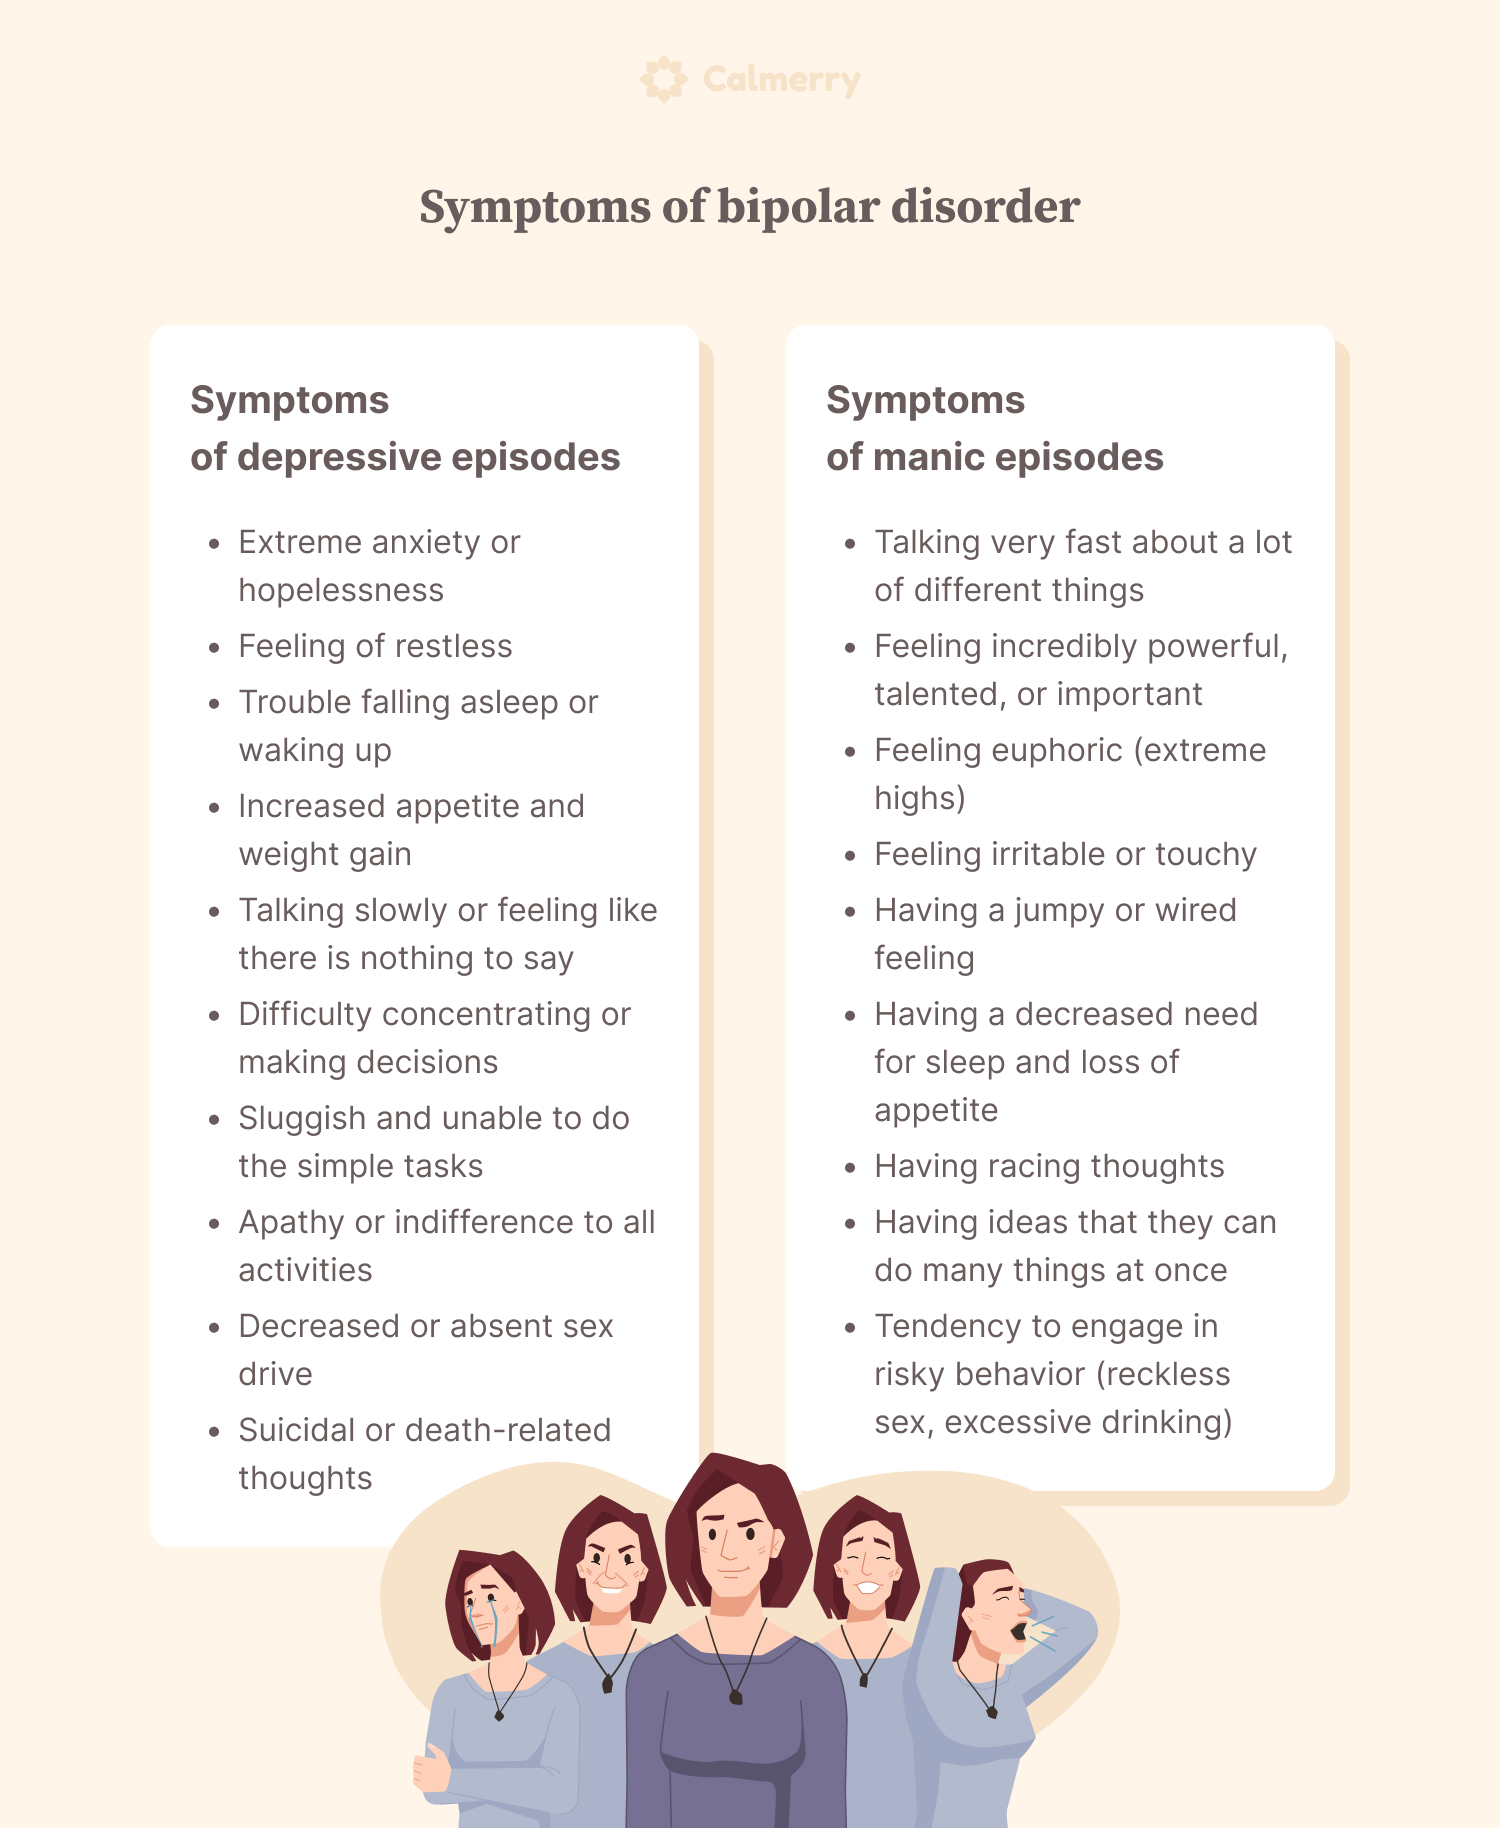 Symptoms of bipolar disorder